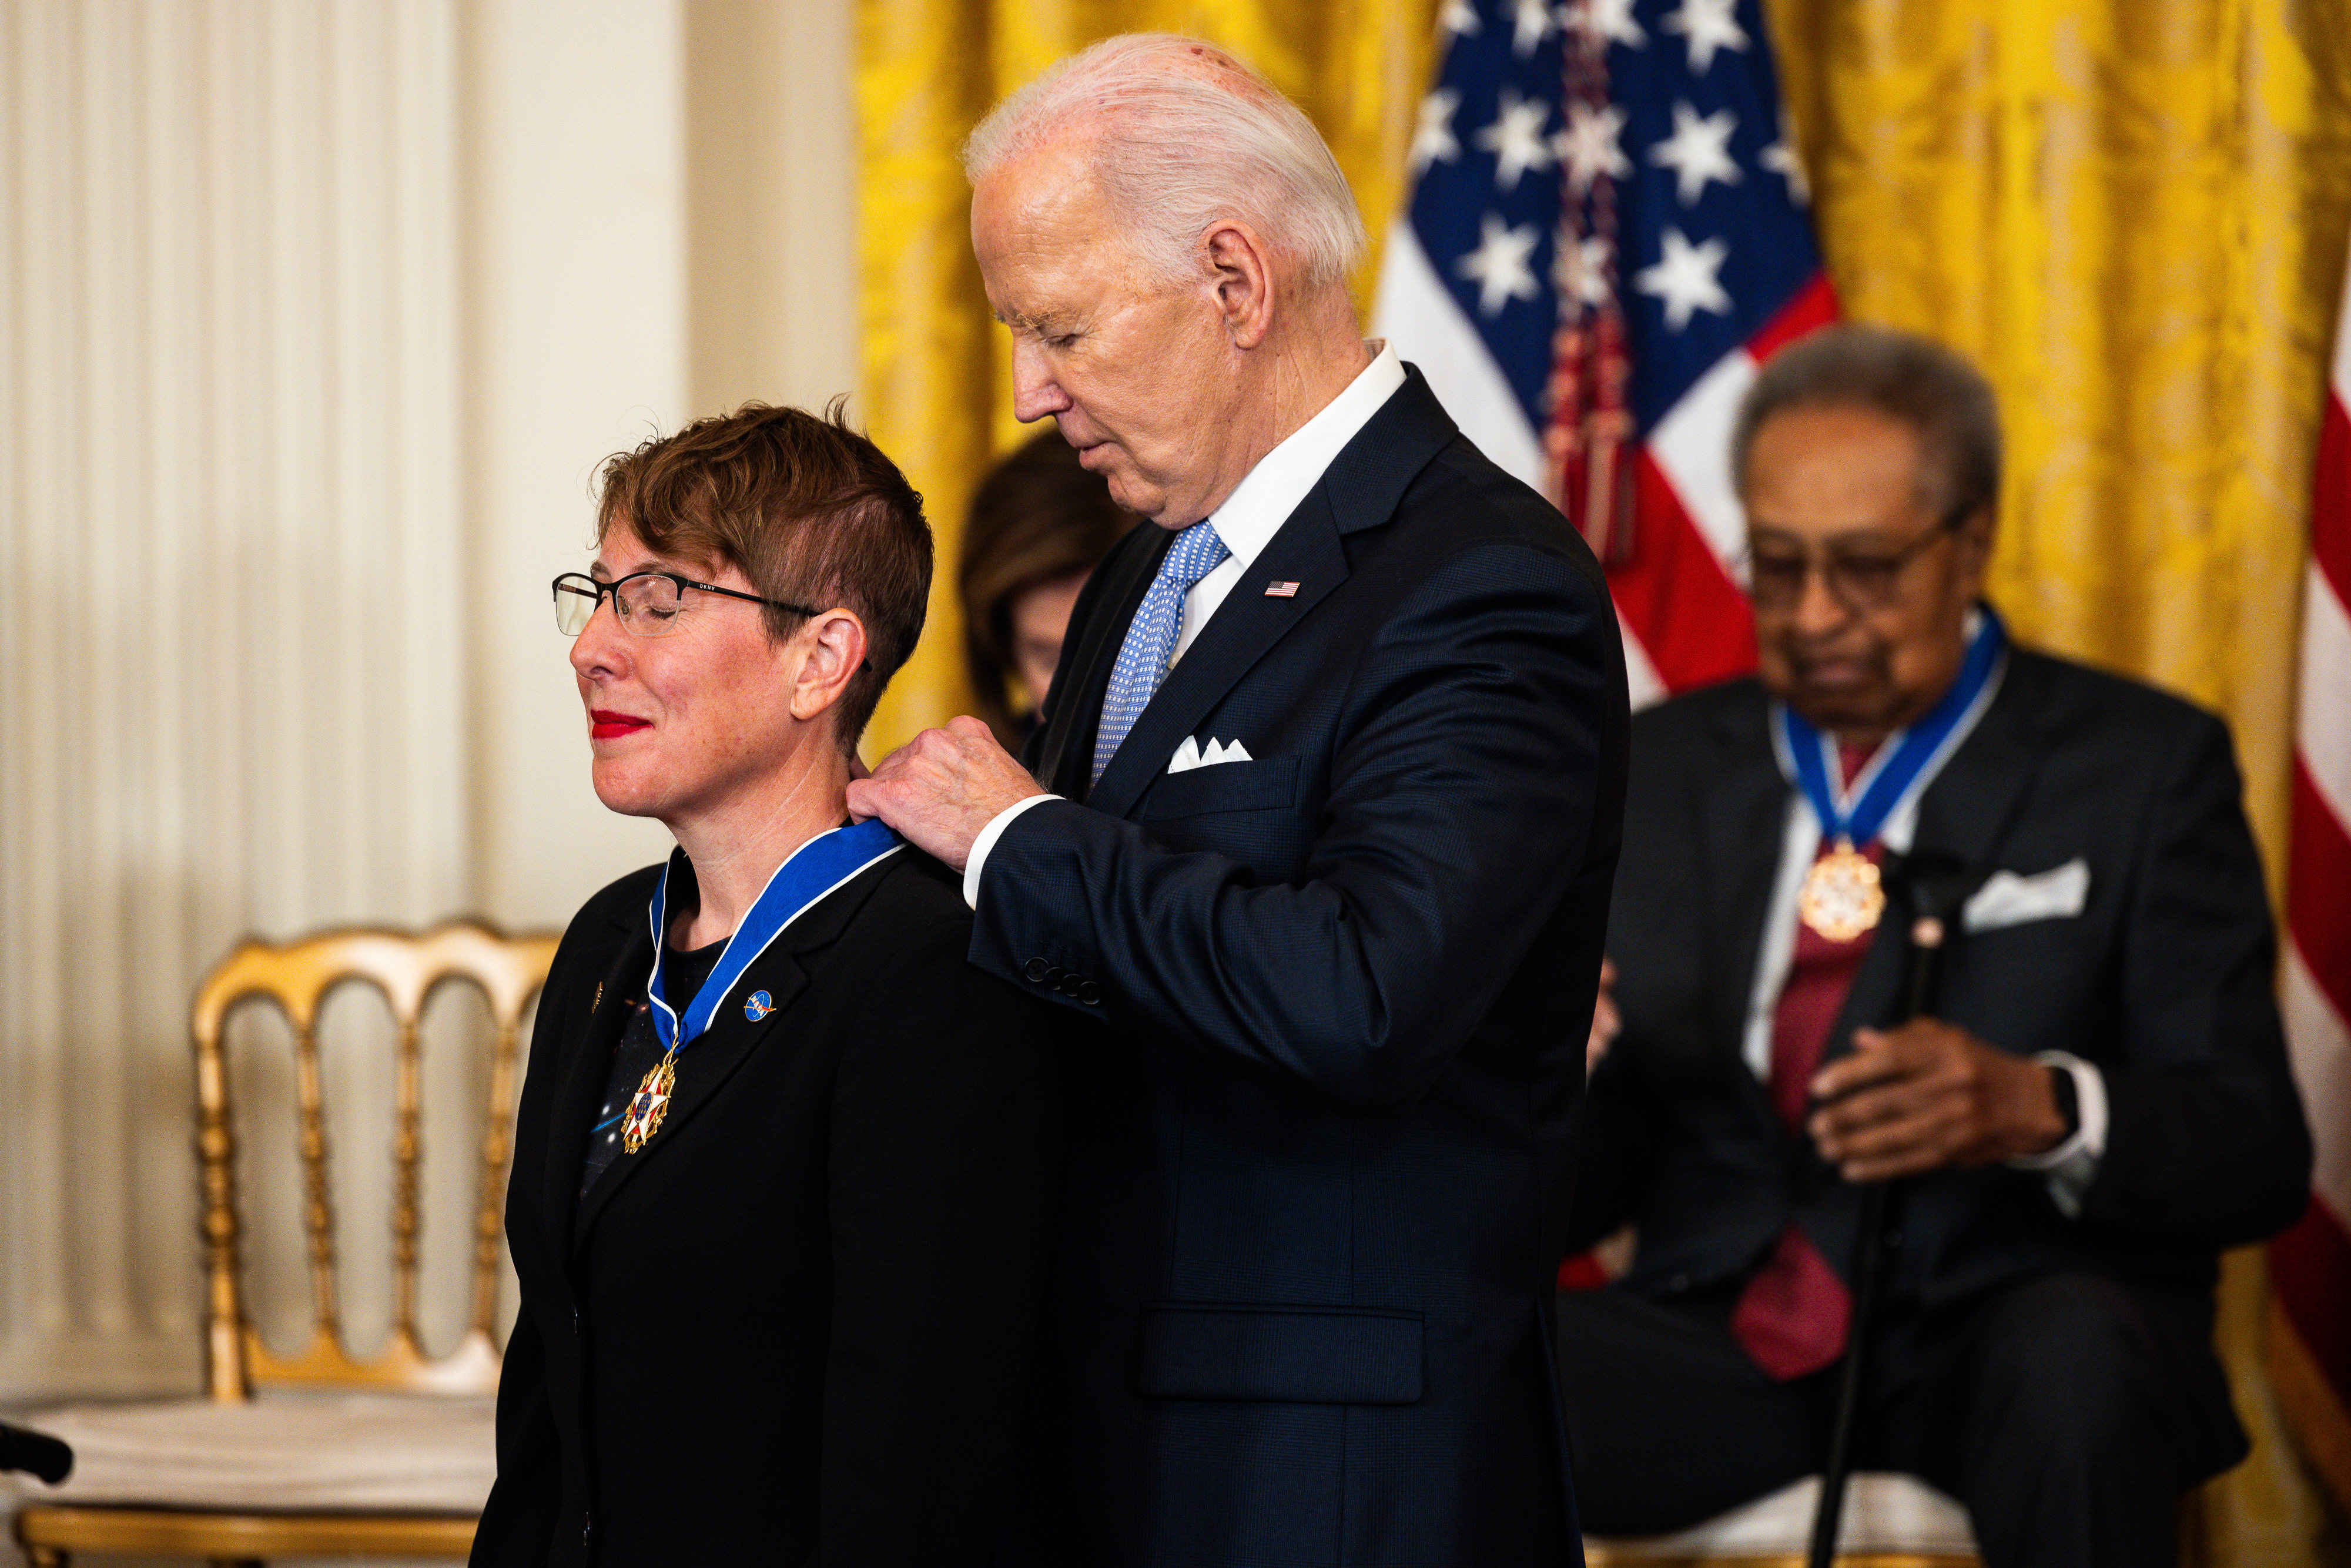 una mujer que lleva un pin de la NASA sonríe con lápiz labial rojo mientras un anciano con traje detrás de ella le pone el collar de una medalla que cuelga alrededor de su cuello.